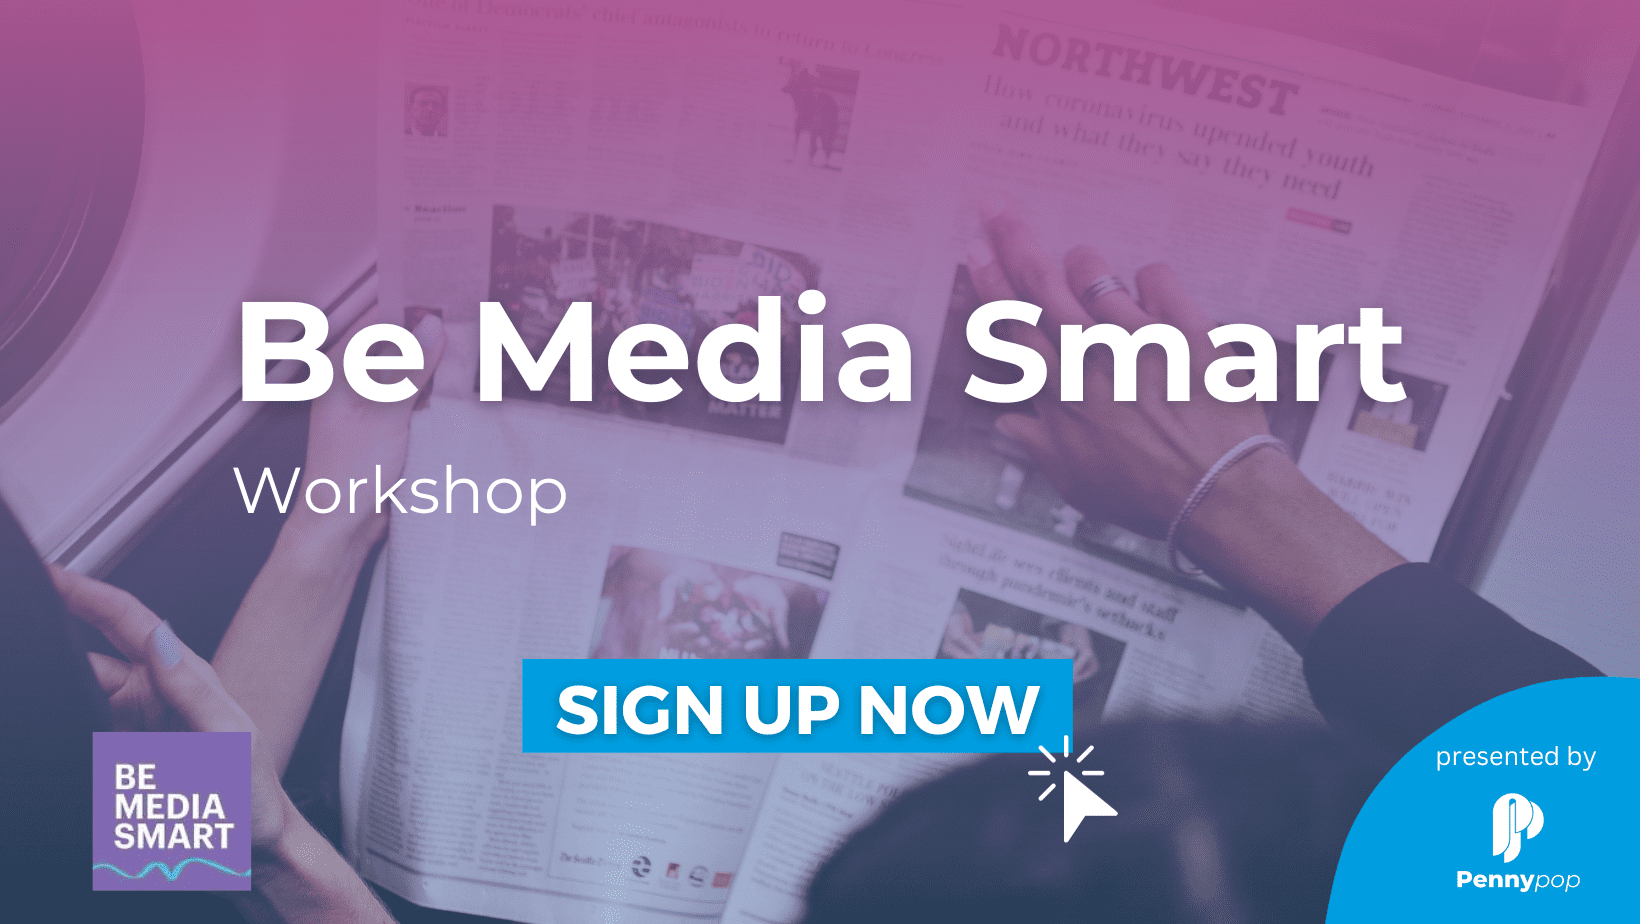 Be Media Smart Workshop